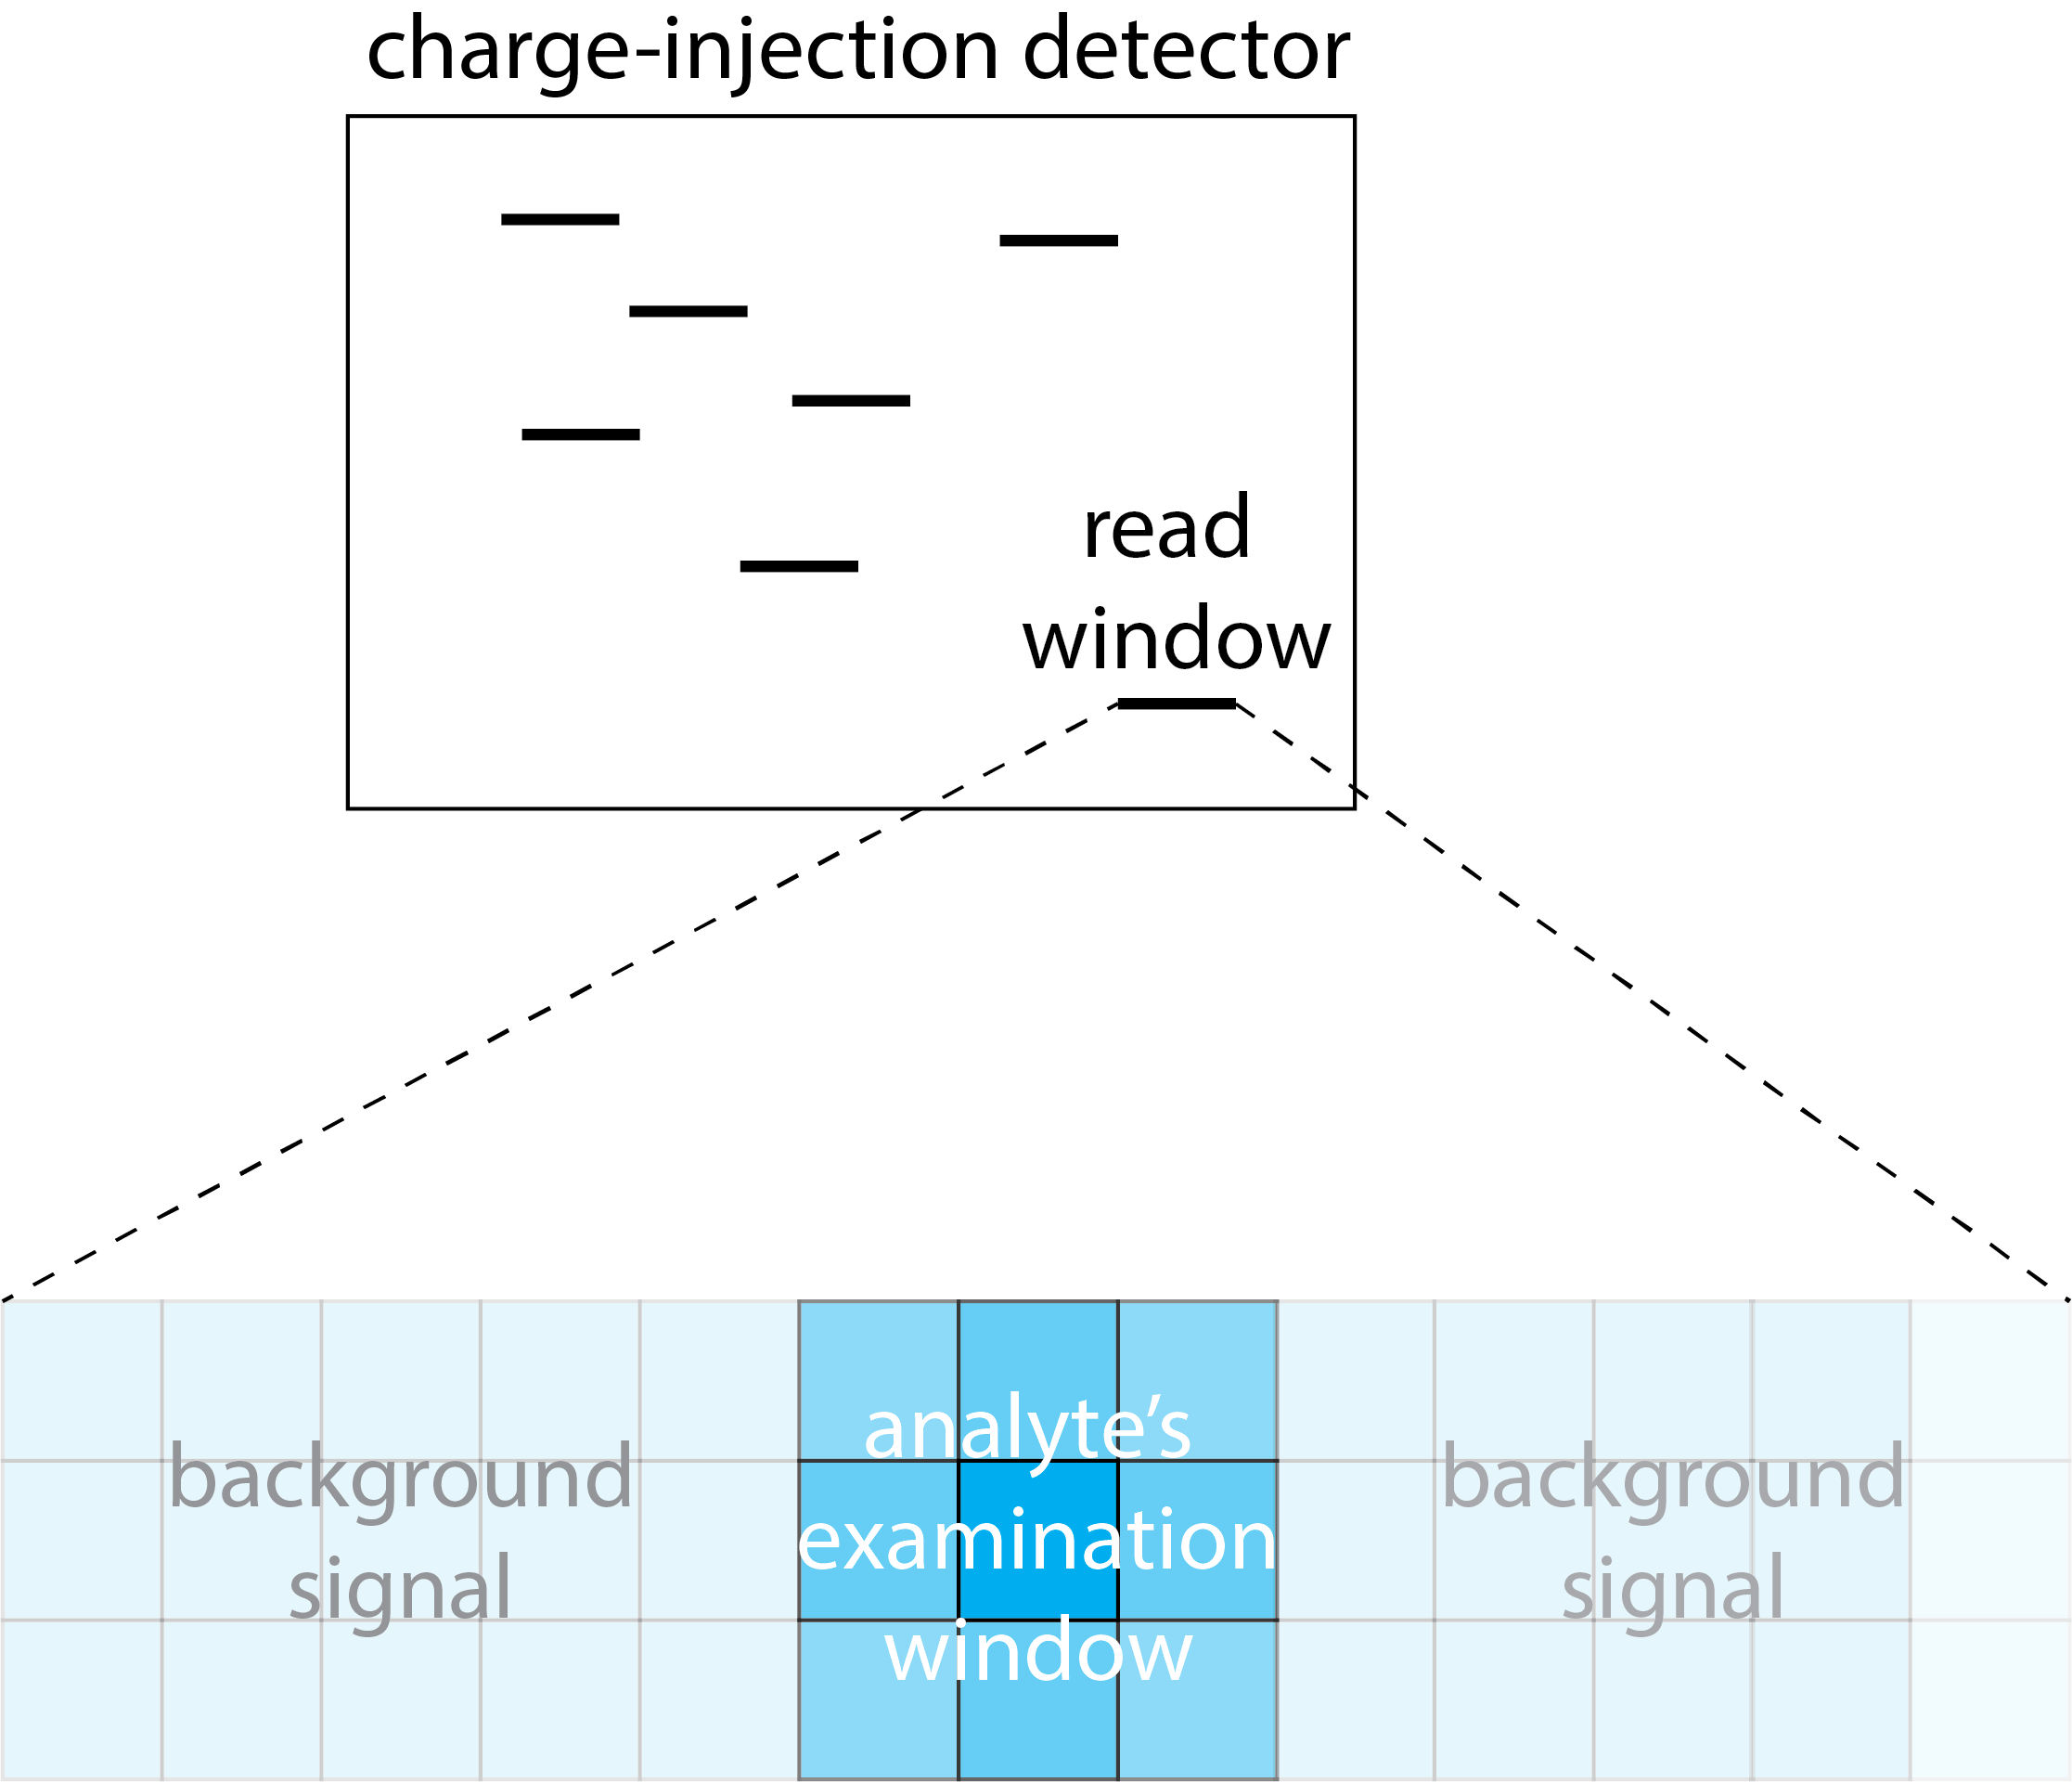 Ilustración que muestra un detector de carga-inyección.